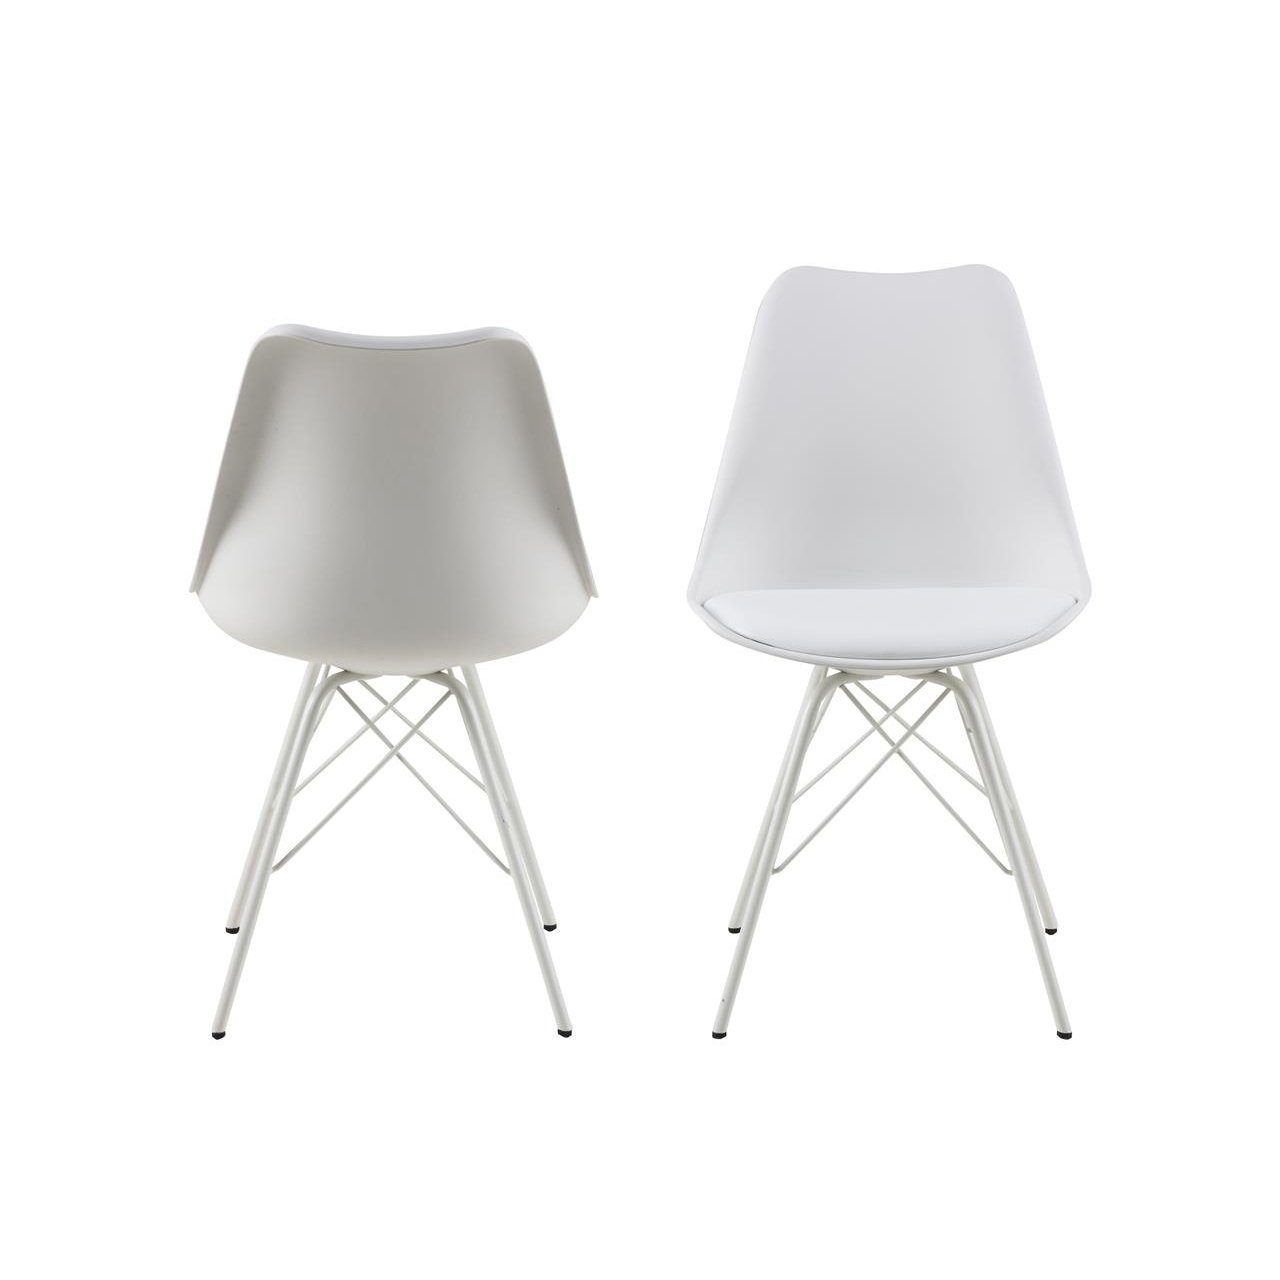 Trendstore „Ariane“ Stuhl mit Bezug aus Kunstleder in Weiß und Metallgestell in Ansicht von hinten und vorne.